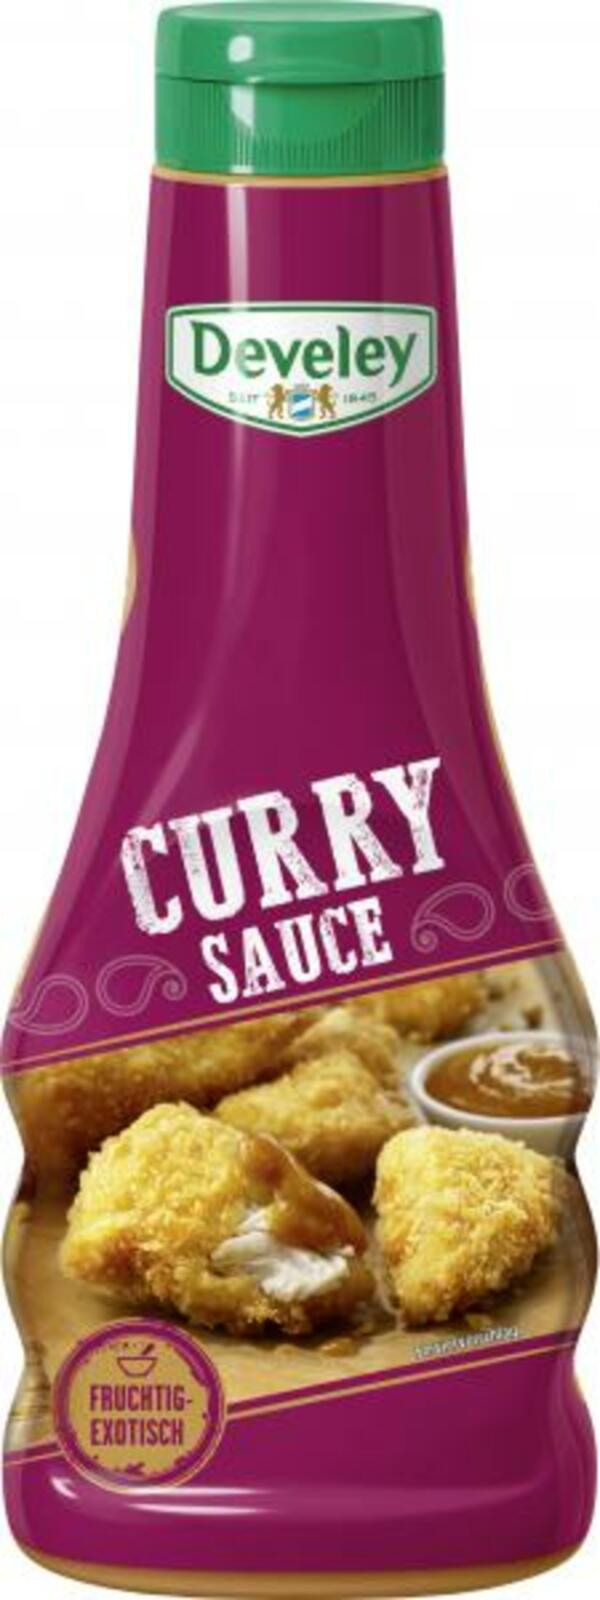 Bild 1 von Develey Curry-Sauce fruchtig-exotisch